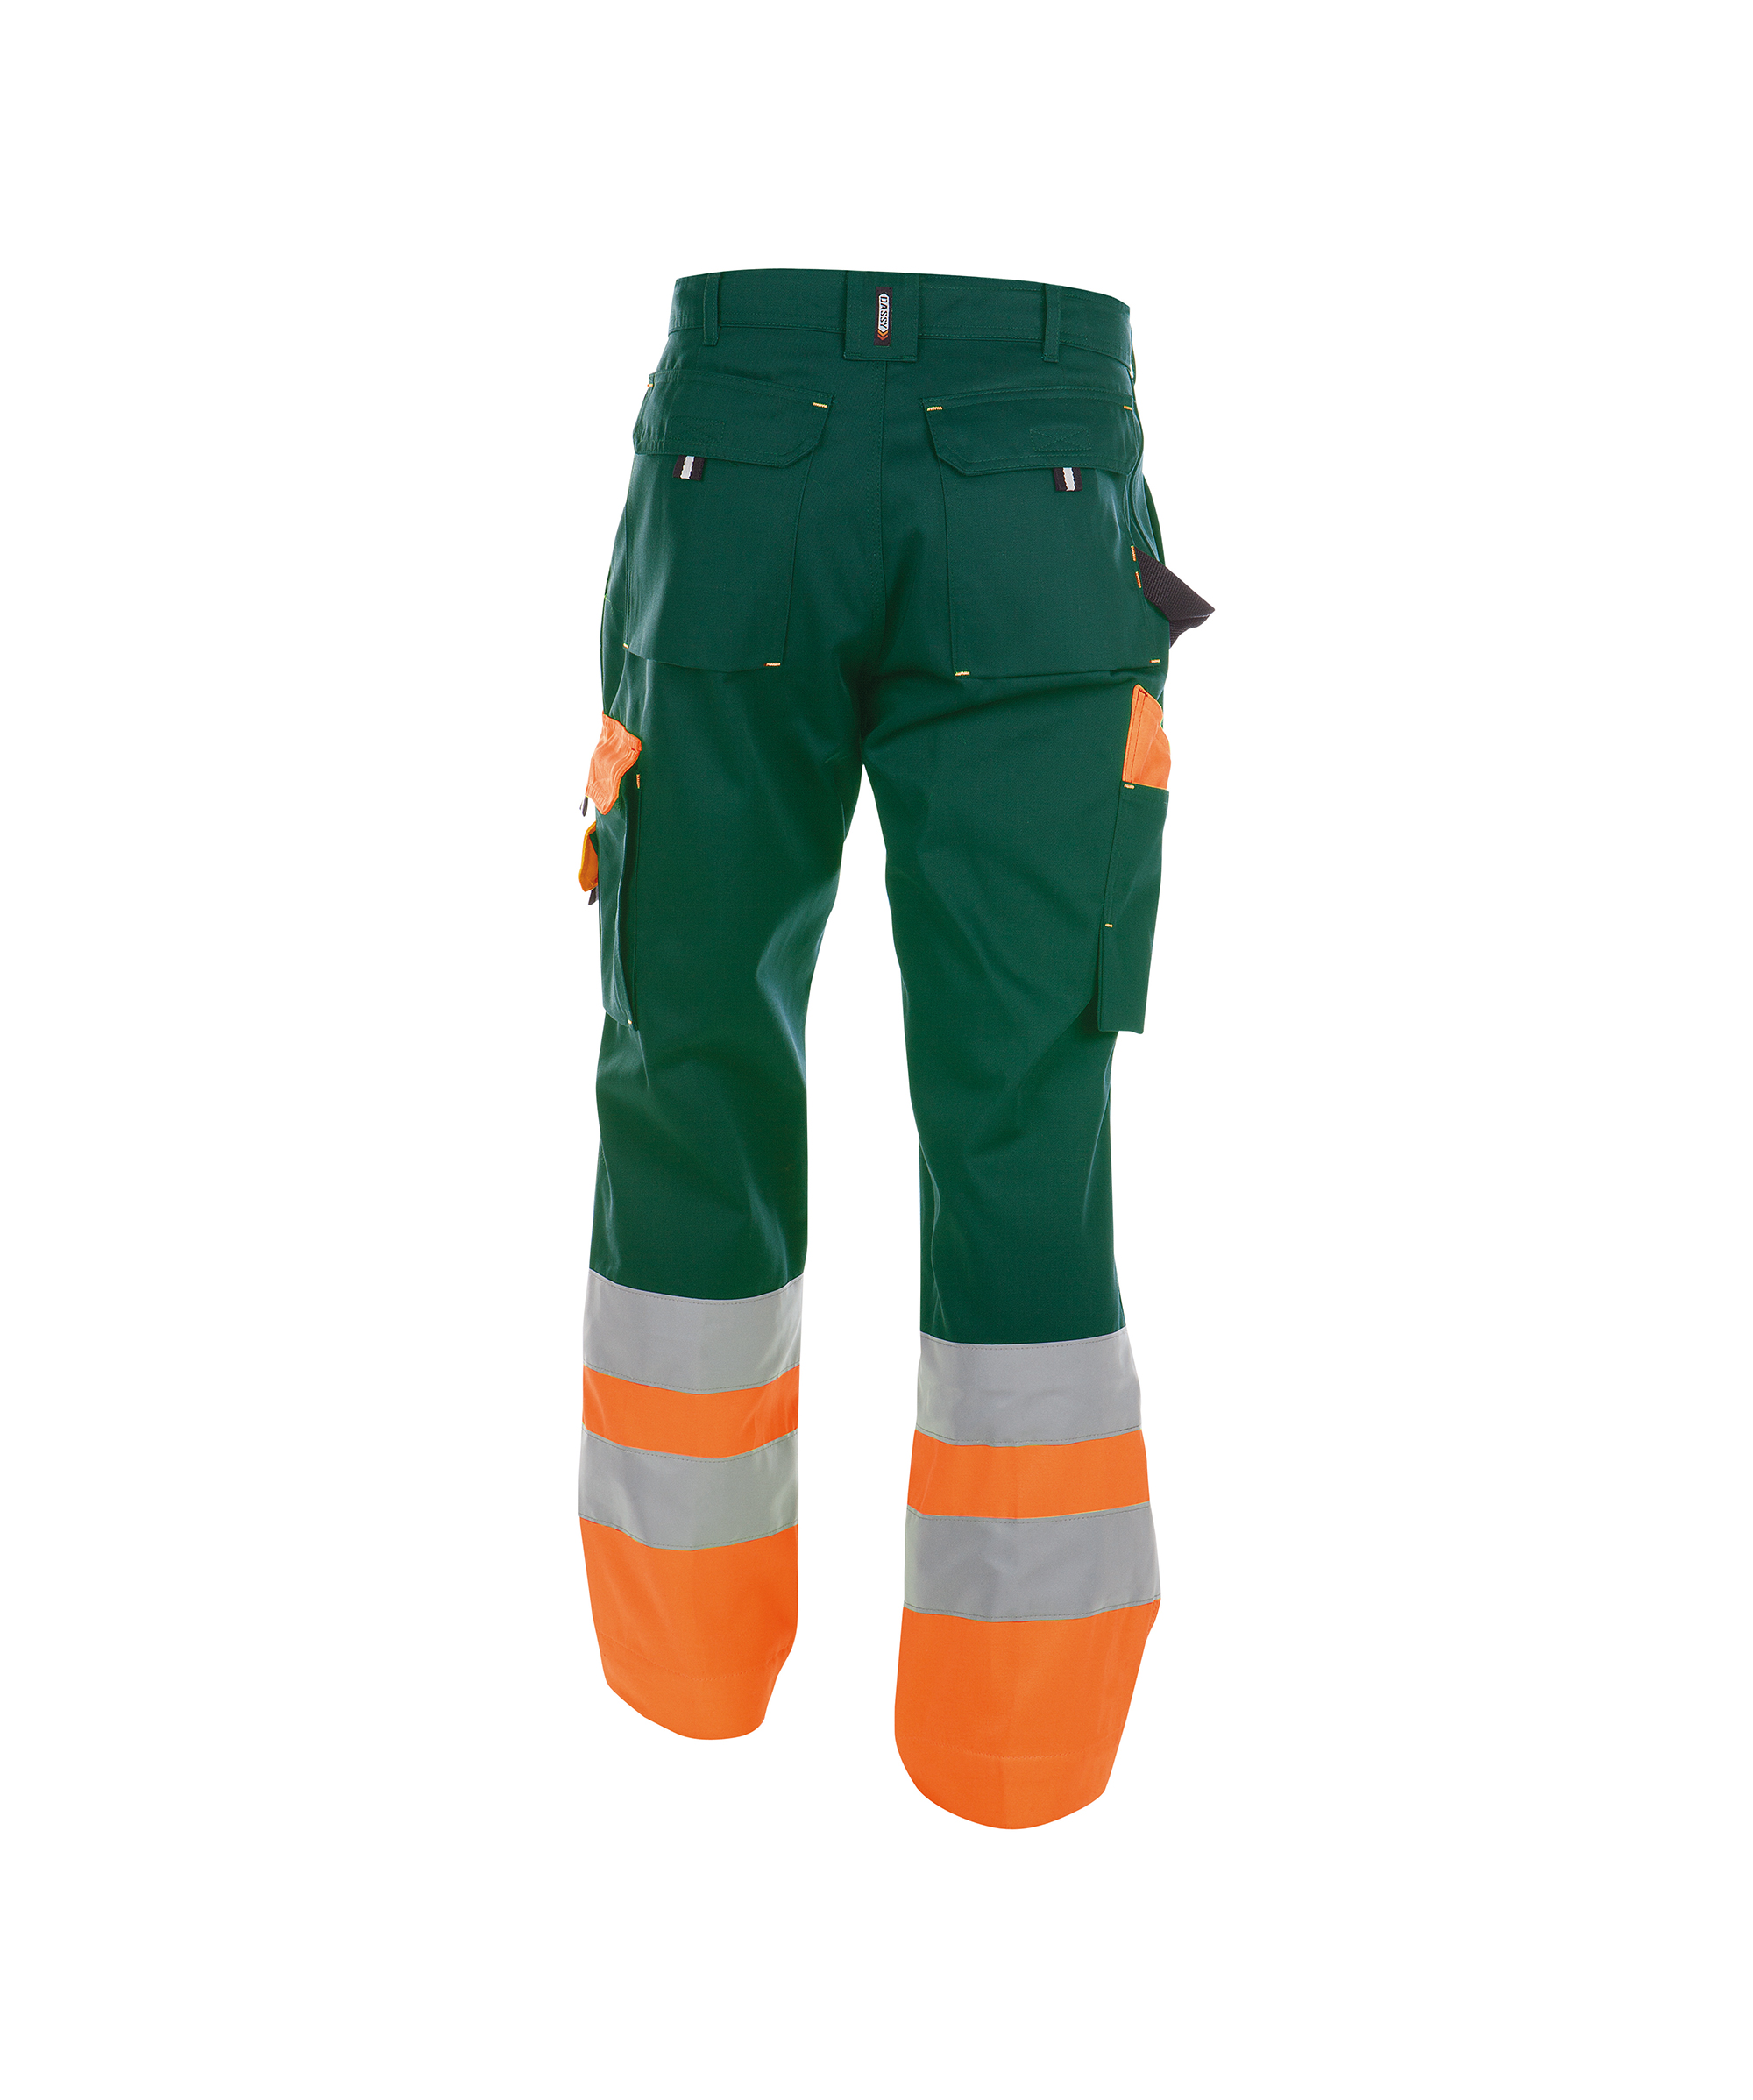 omaha_high-visibility-work-trousers_bottle-green-fluo-orange_back.jpg